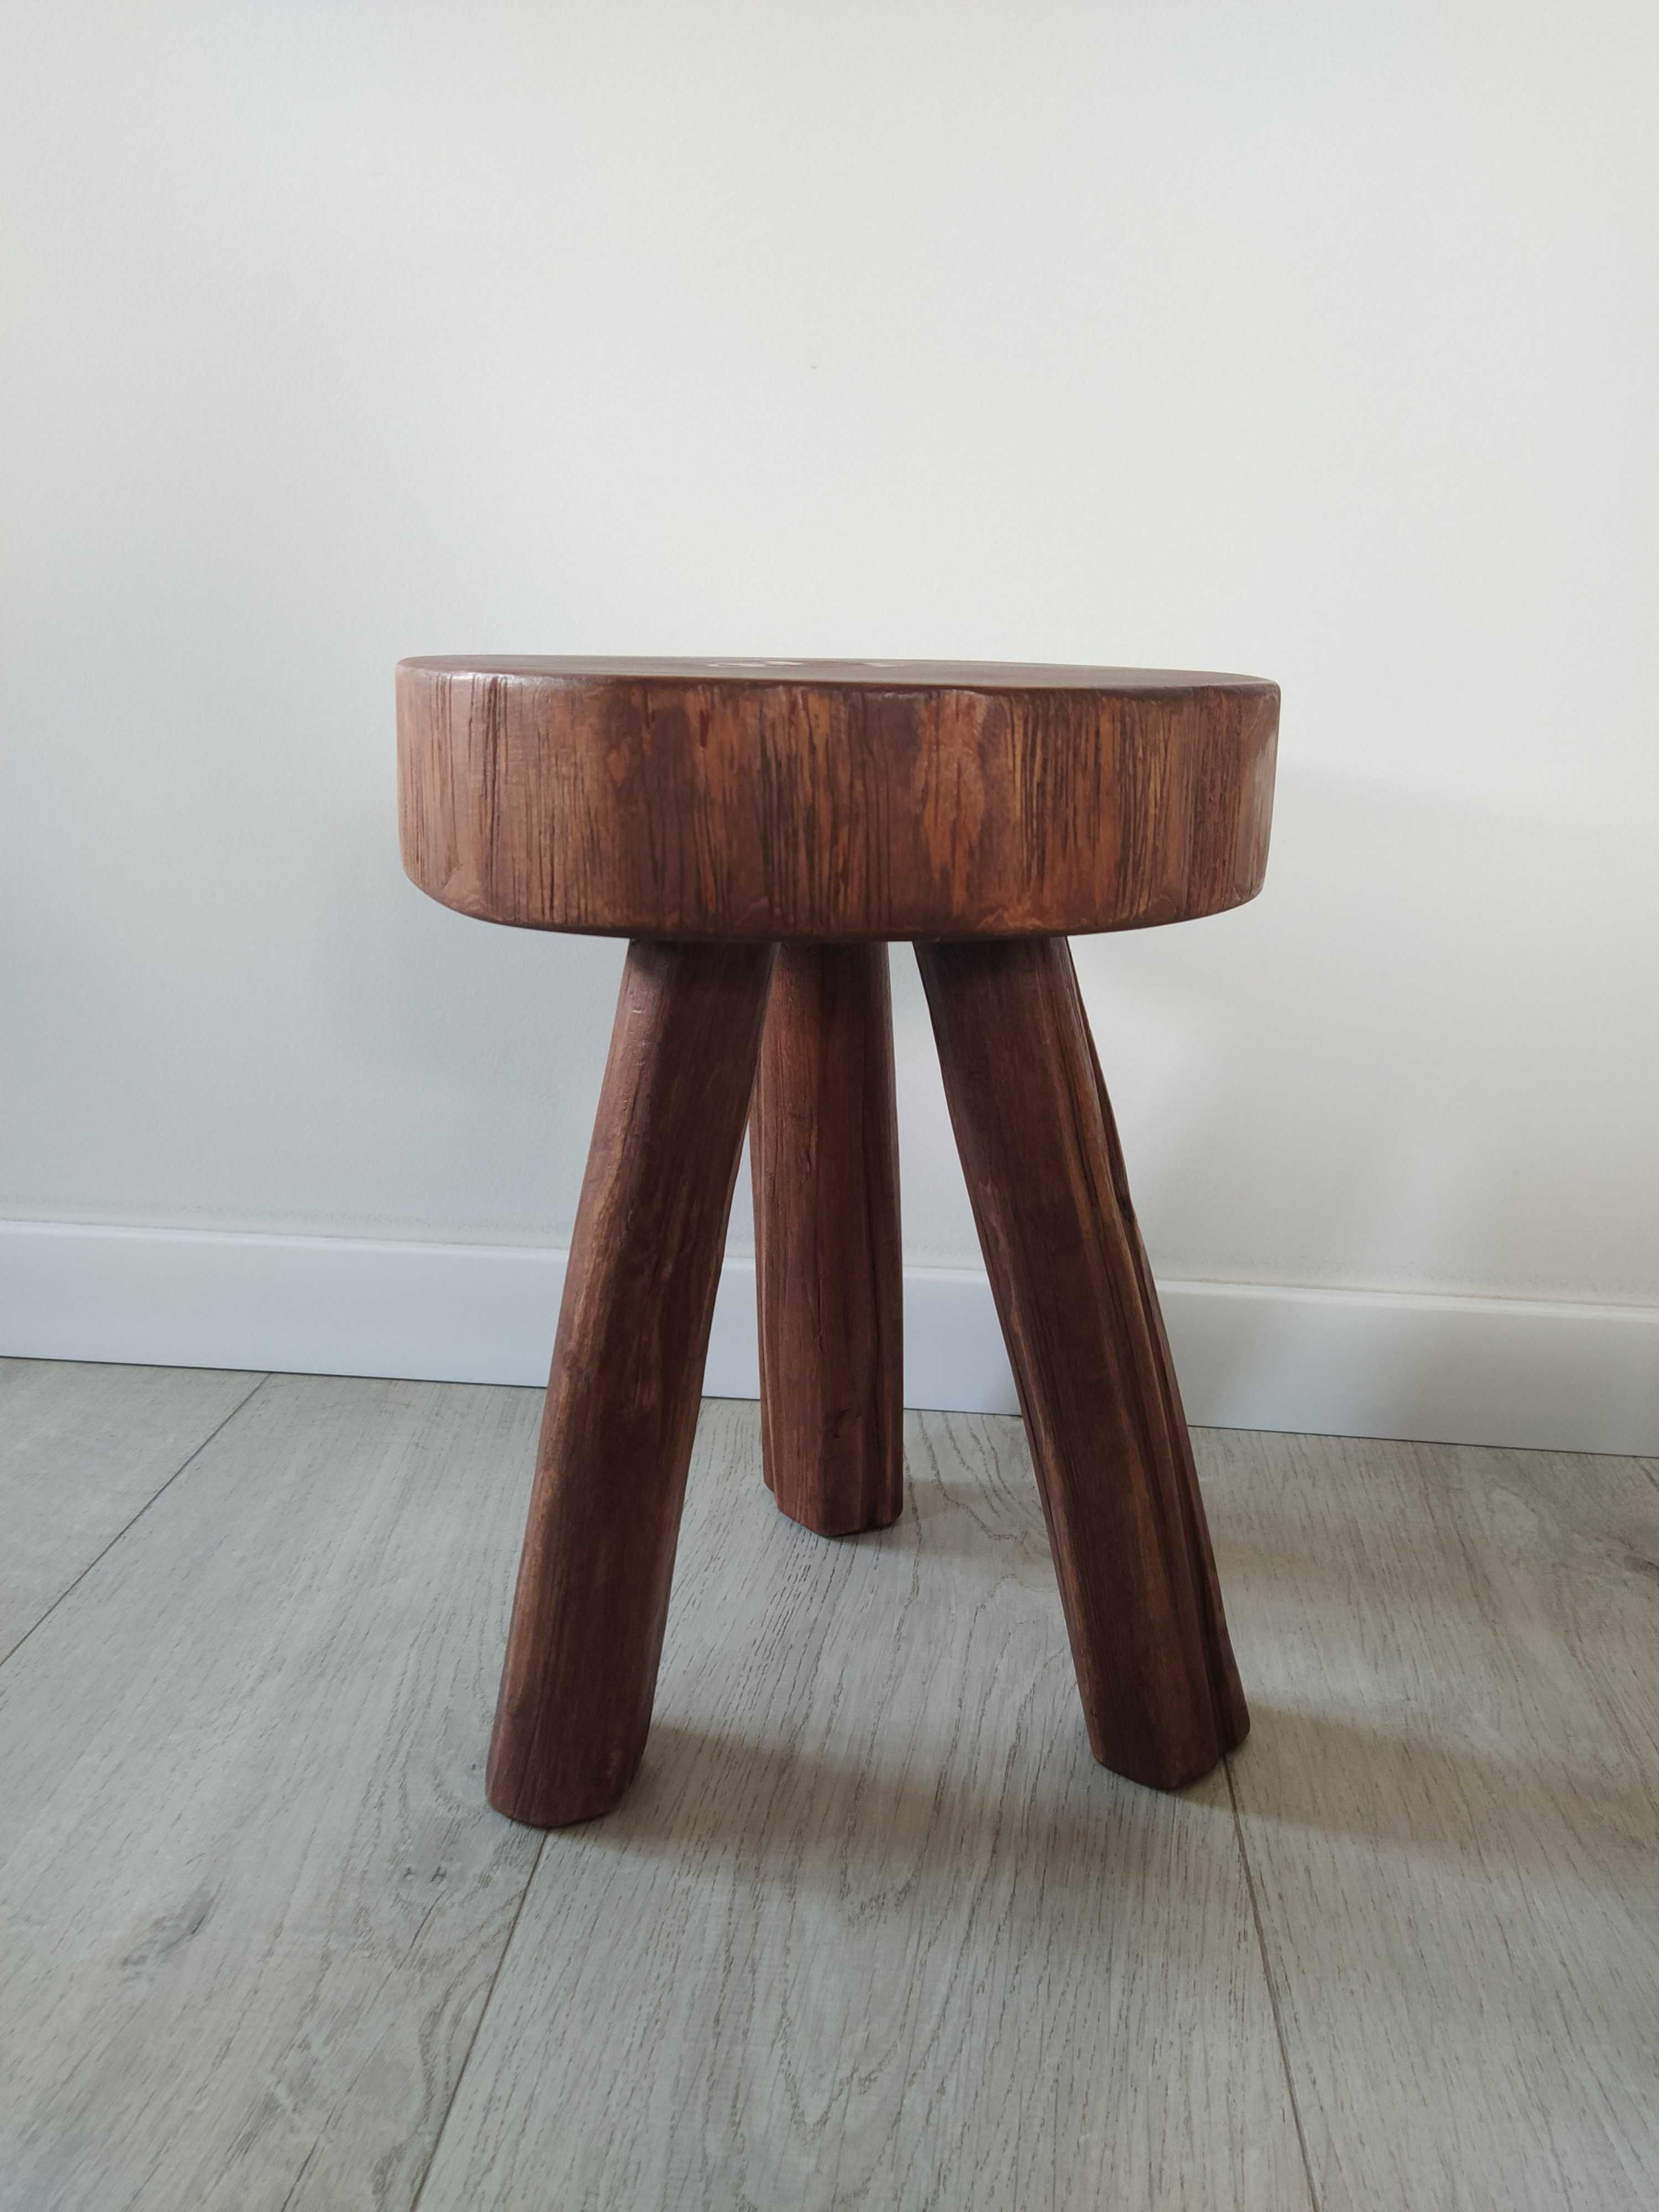 Stołek stolik taboret drewniany 100% handmade